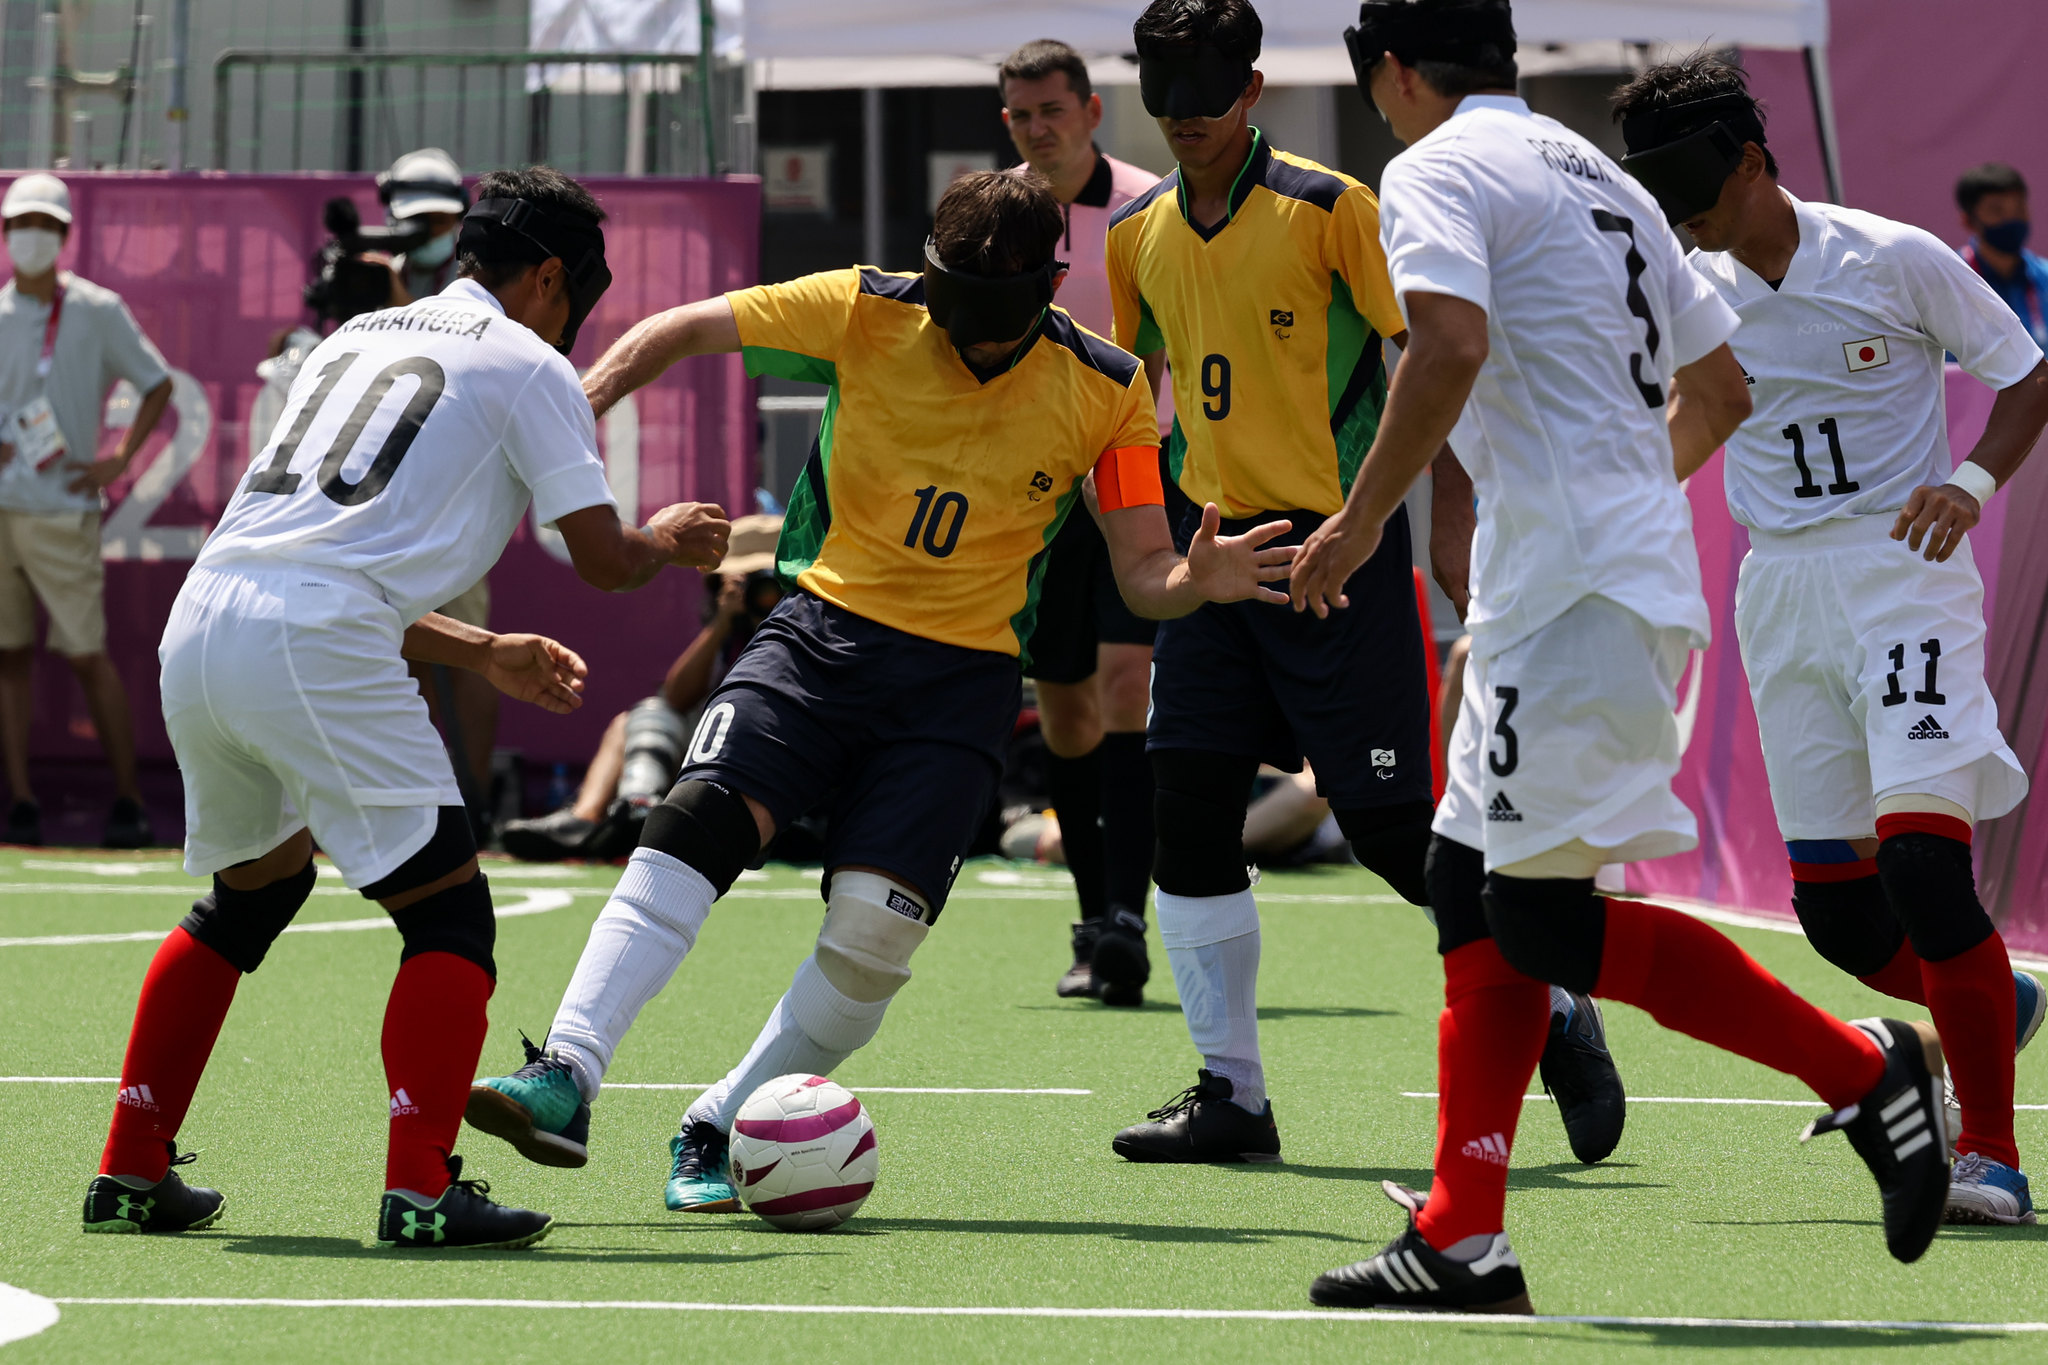 Conheça o Futebol de 5: o esporte que brilha nas arenas das paralimpíadas